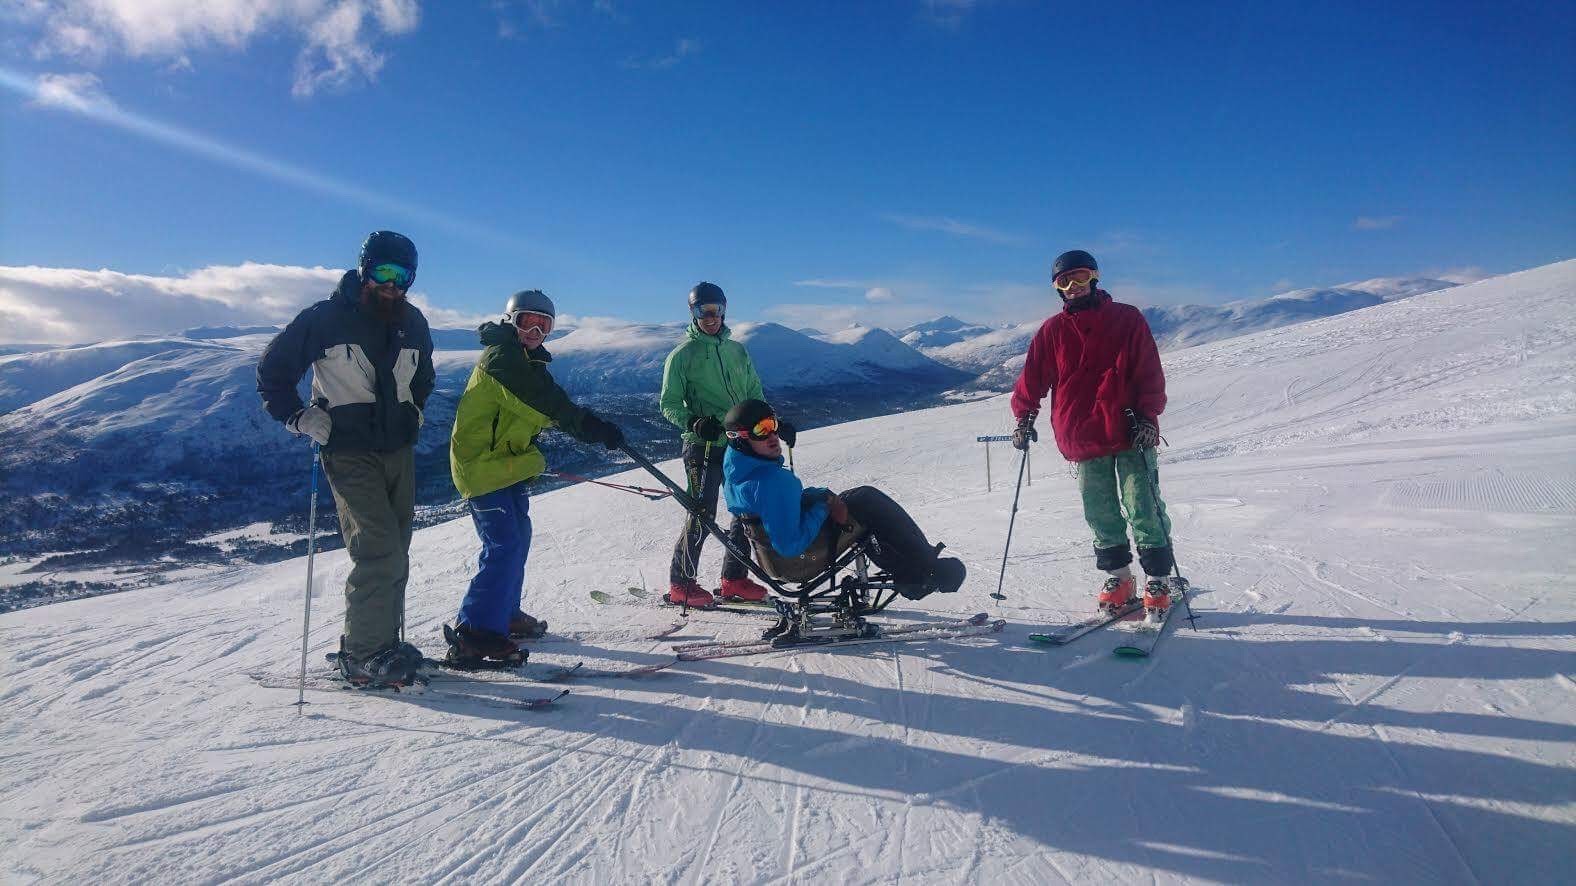 Fredrik på sitski med fire andre på fjellet. Flott landskap og blå himmel bak dem. Fargerike skiklær.